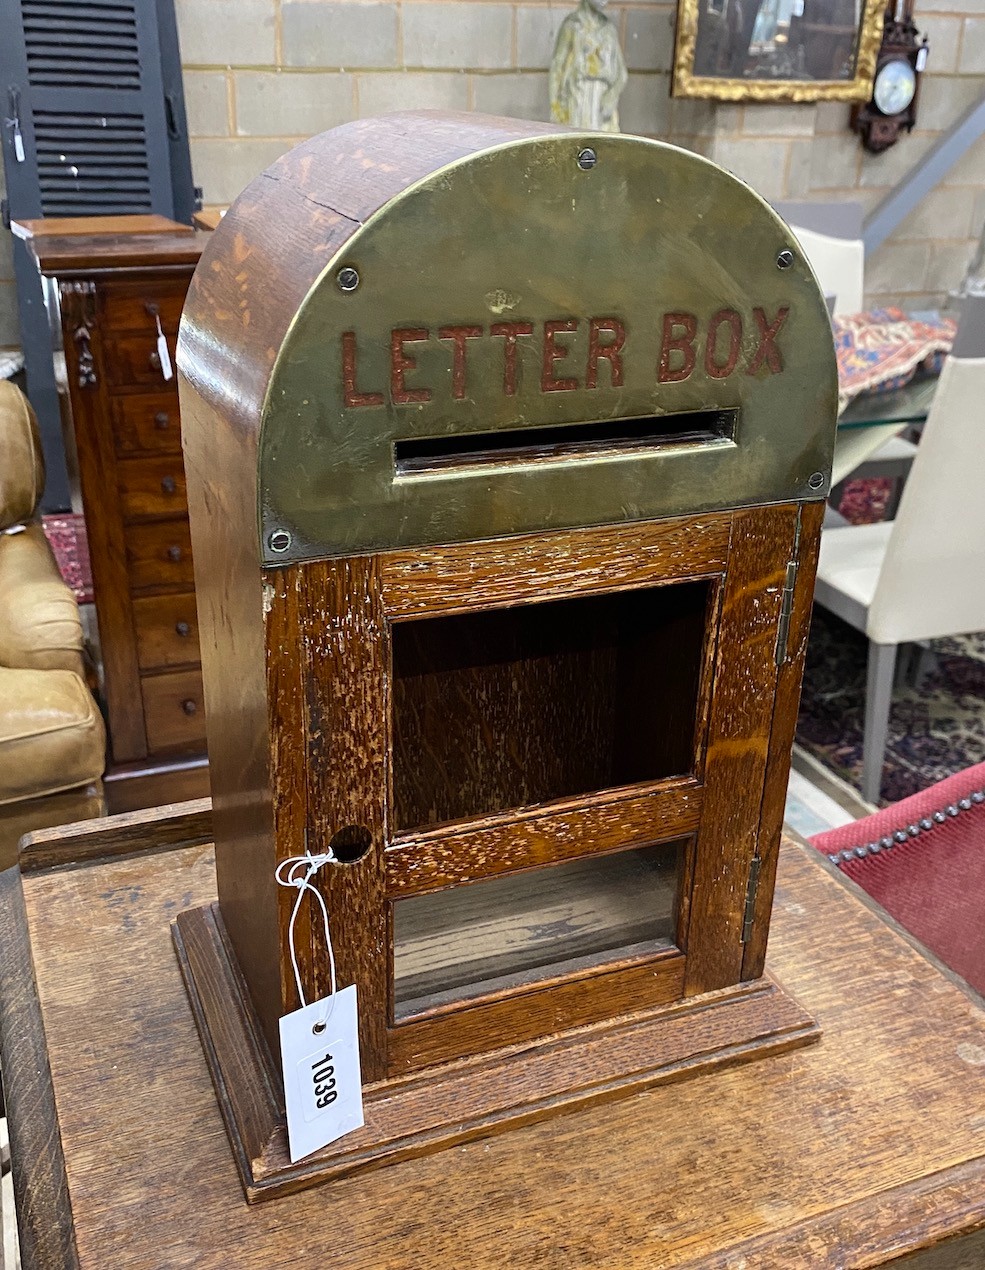 An early 20th century brass mounted oak internal letterbox, width 28cm, depth 20cm, height 41cm